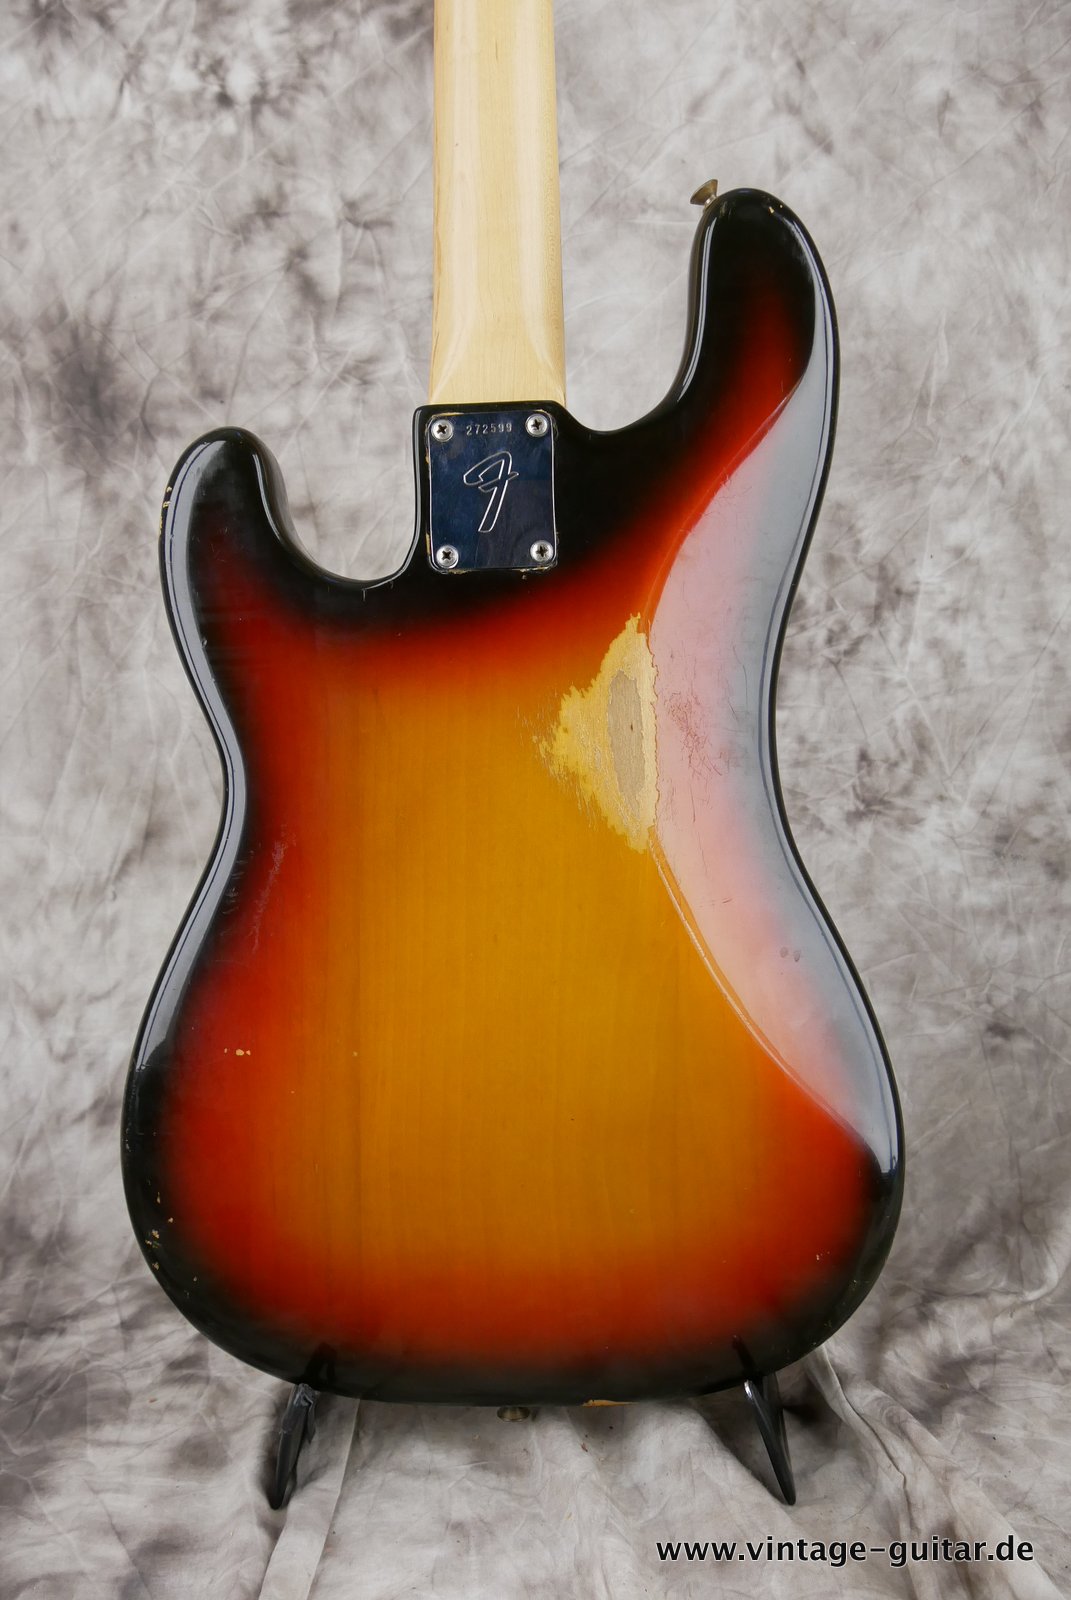 Fender-Precision-Bass-sunburst-1969-004.JPG